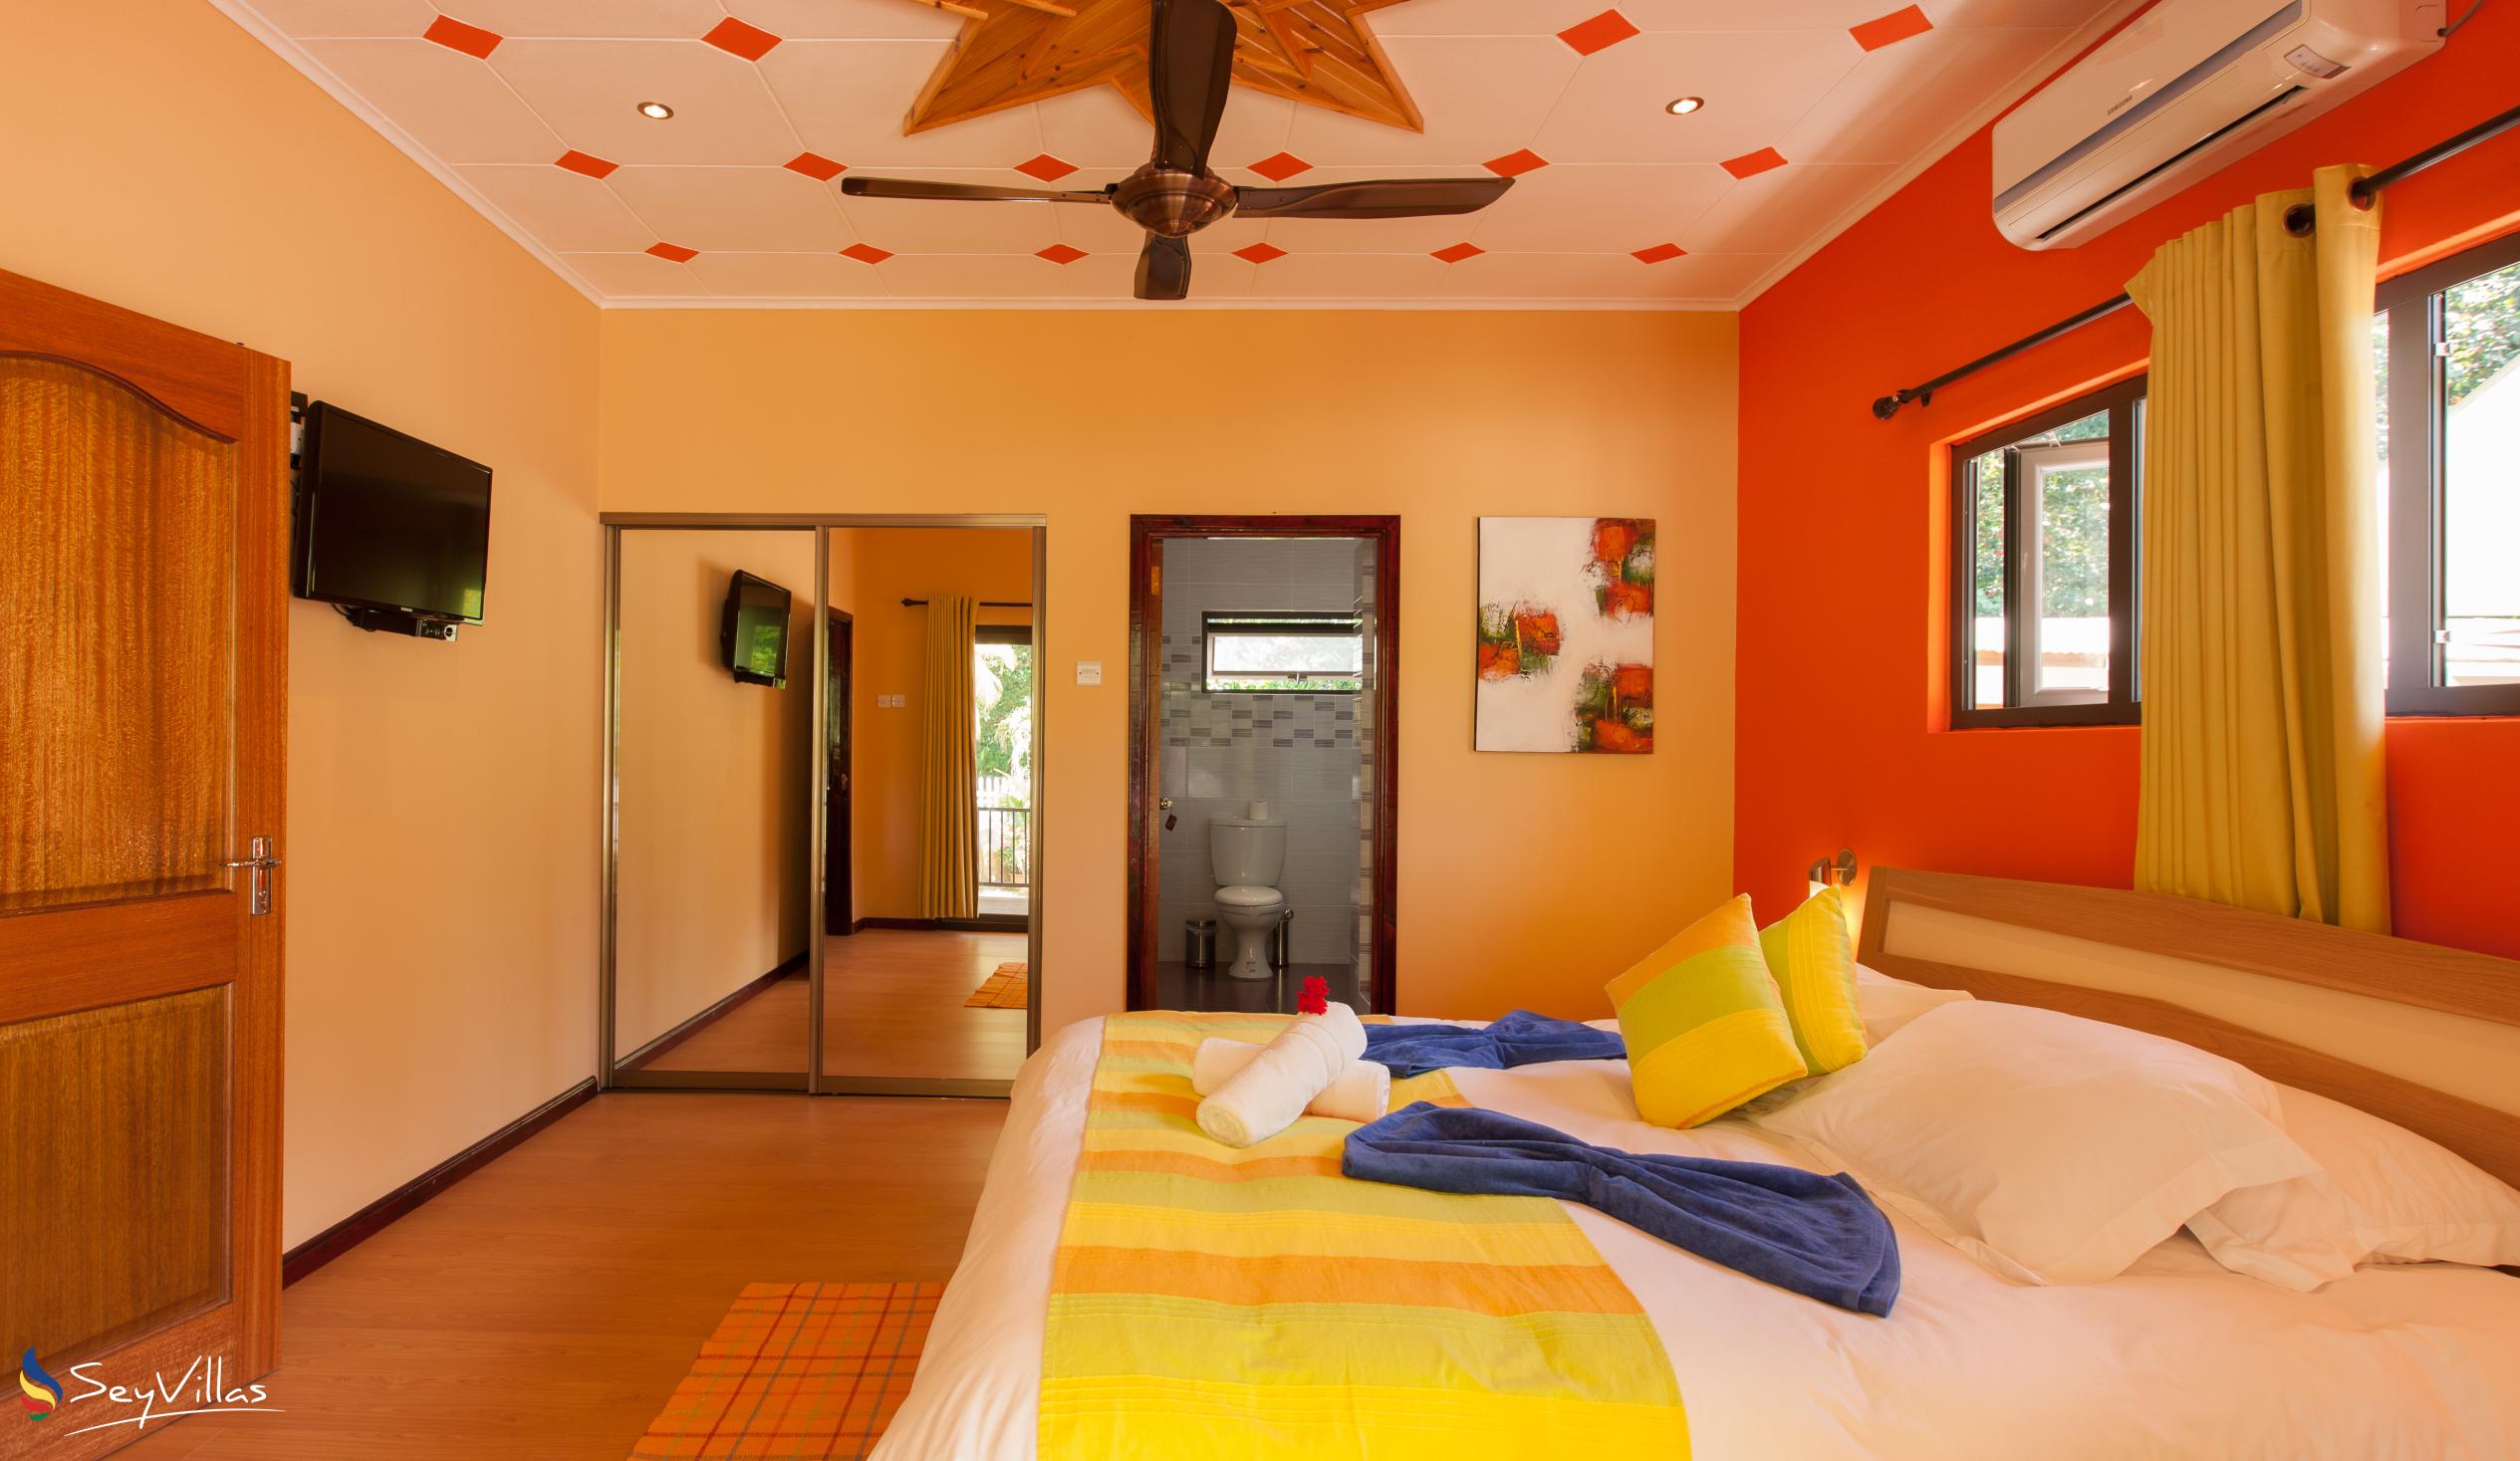 Photo 57: Casa de Leela - 2-Bedroom Bungalow - La Digue (Seychelles)